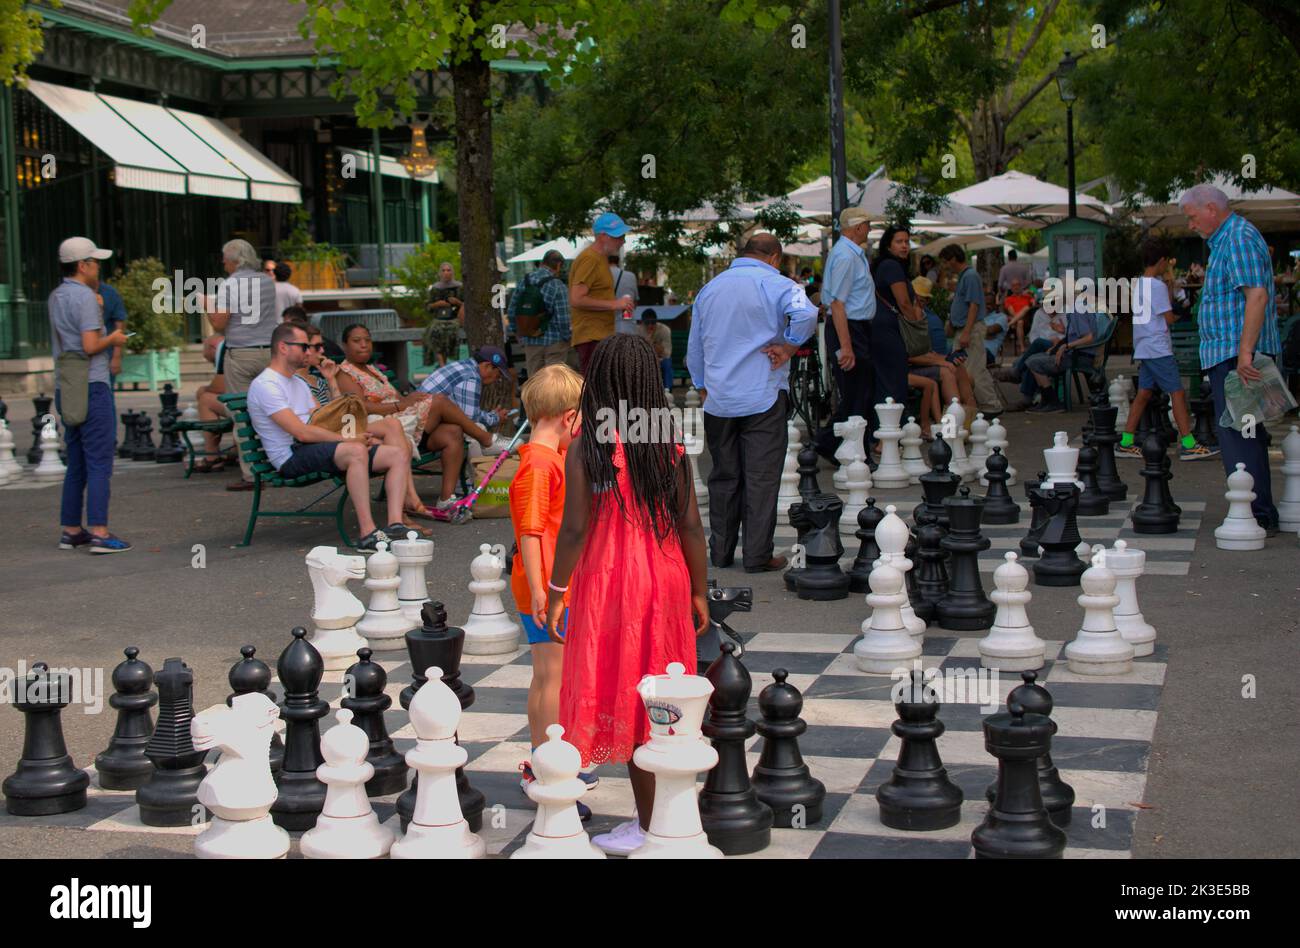 Kinder spielen Schach in einem belebten Park, Geneve, Schweiz Stockfoto